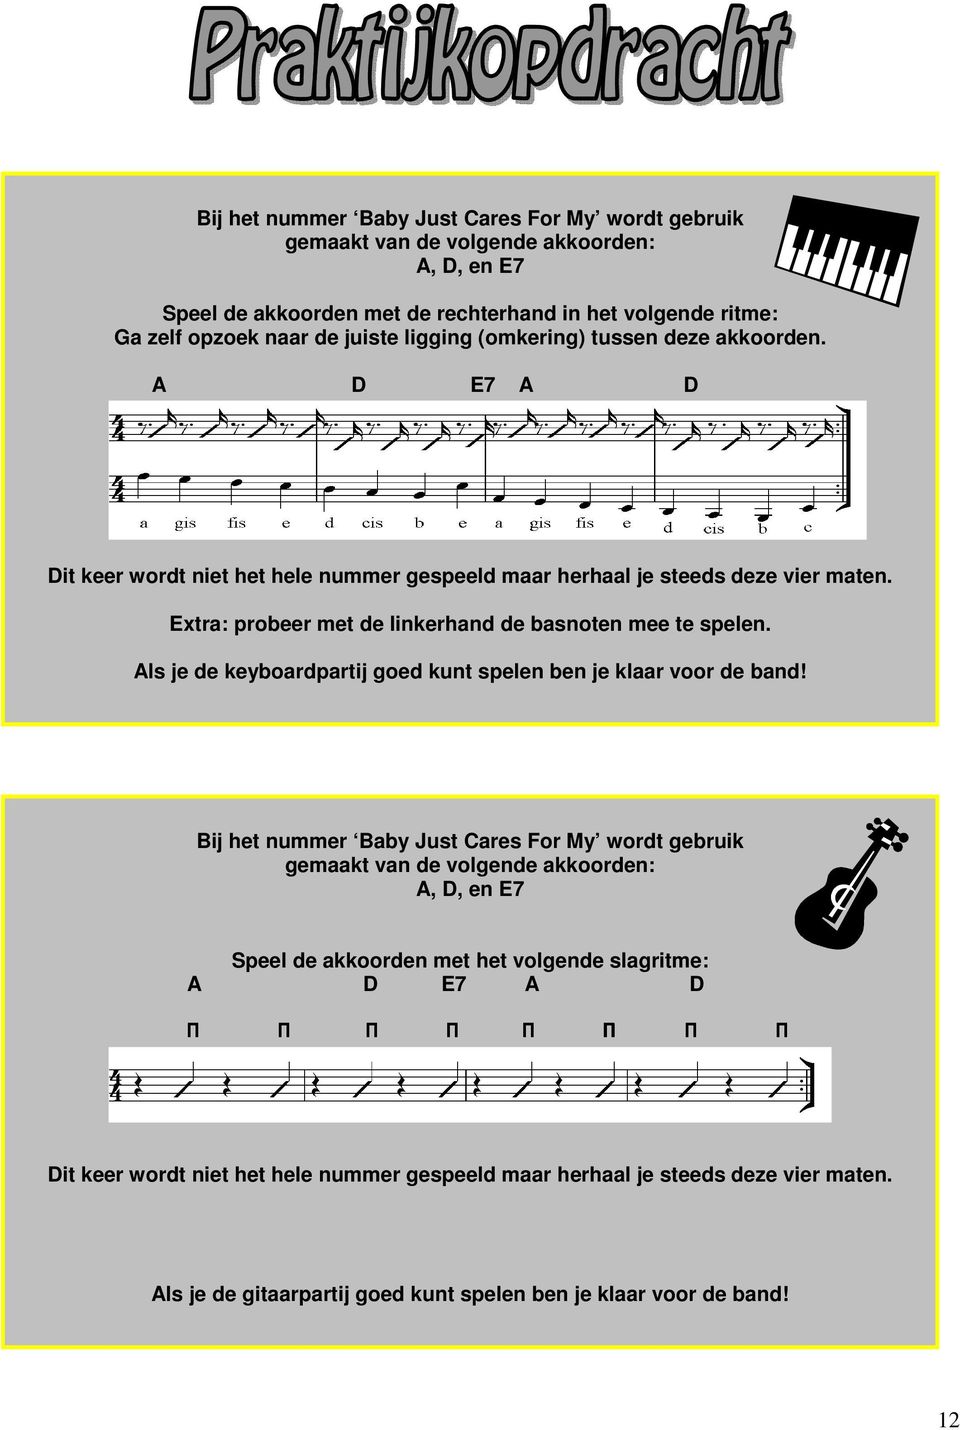 Extra: probeer met de linkerhand de basnoten mee te spelen. Als je de keyboardpartij goed kunt spelen ben je klaar voor de band!